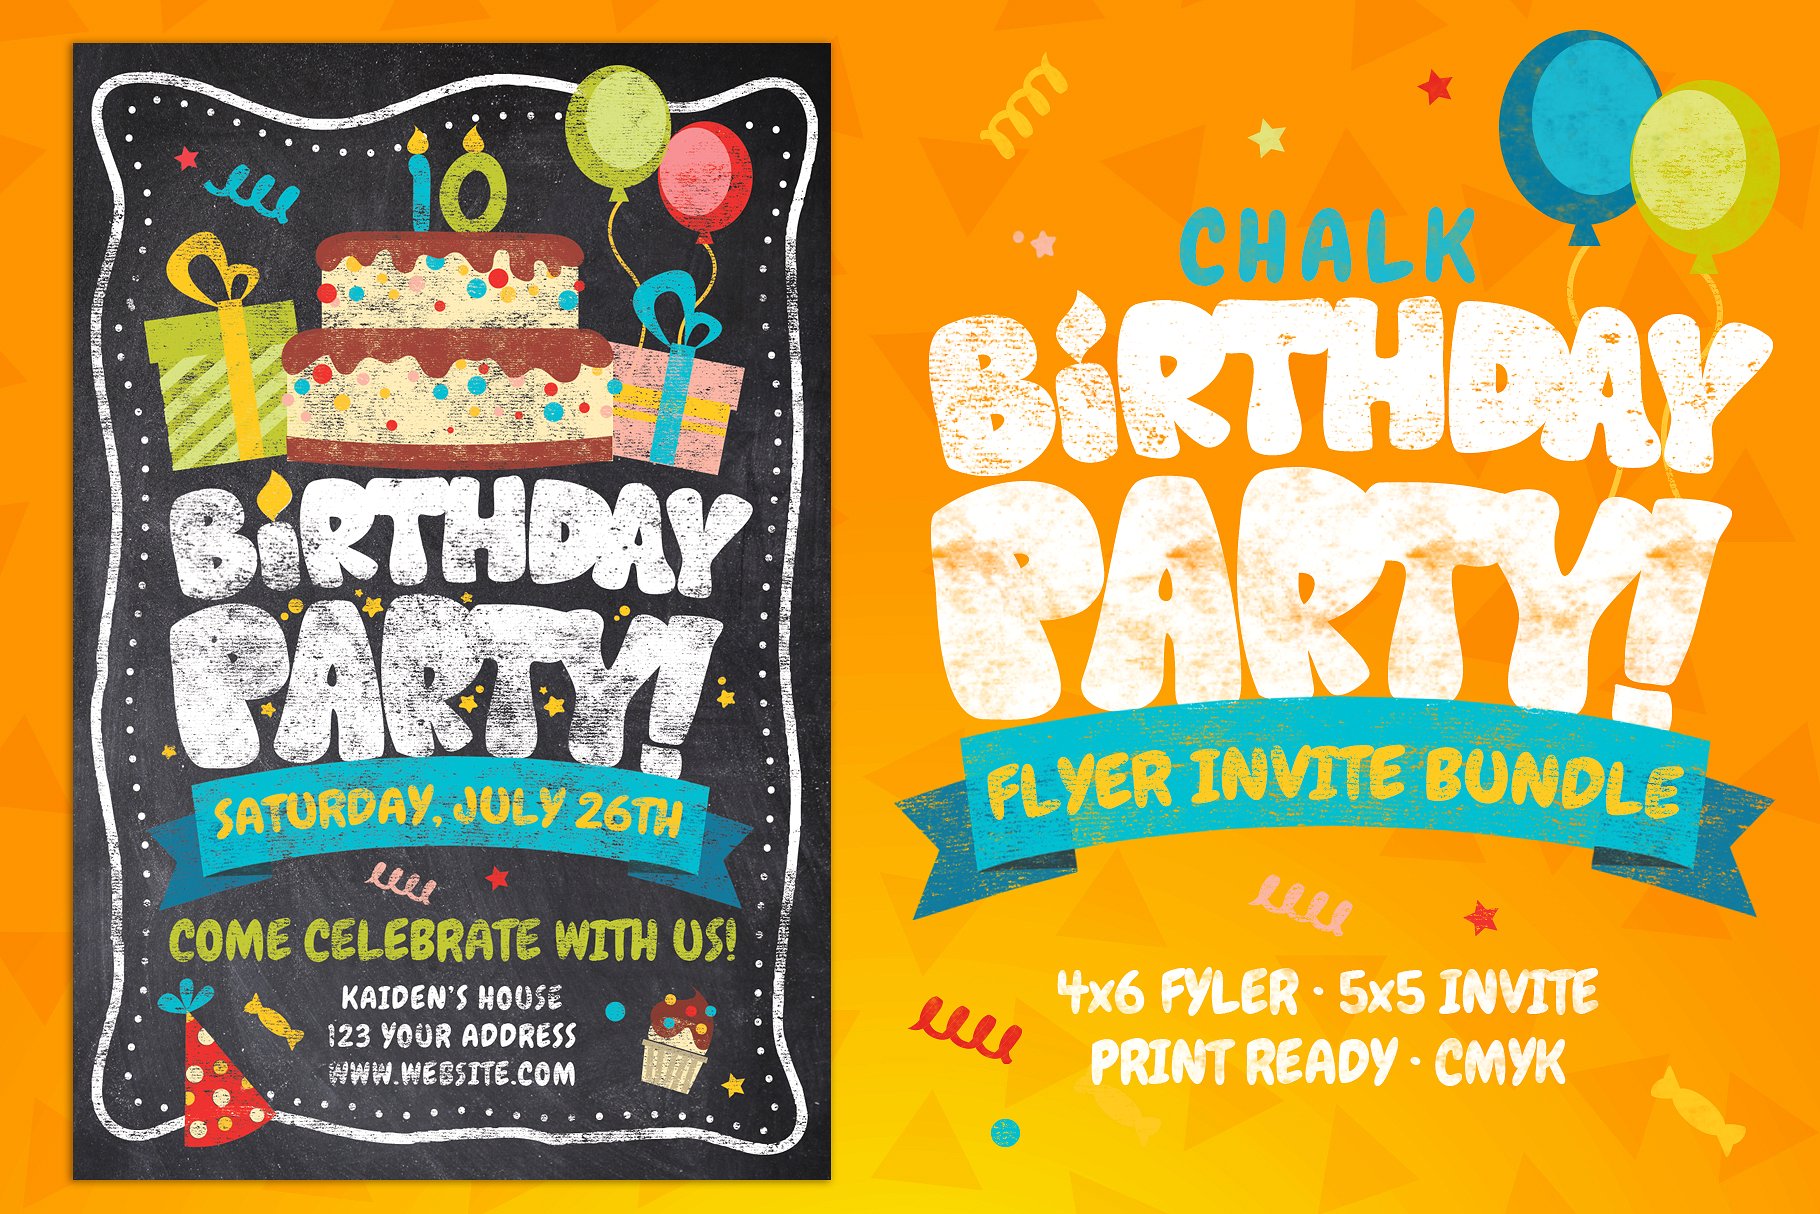 粉笔效果的生日派对海报模板 Chalk Birthday Party Flyer Bundle [psd]插图